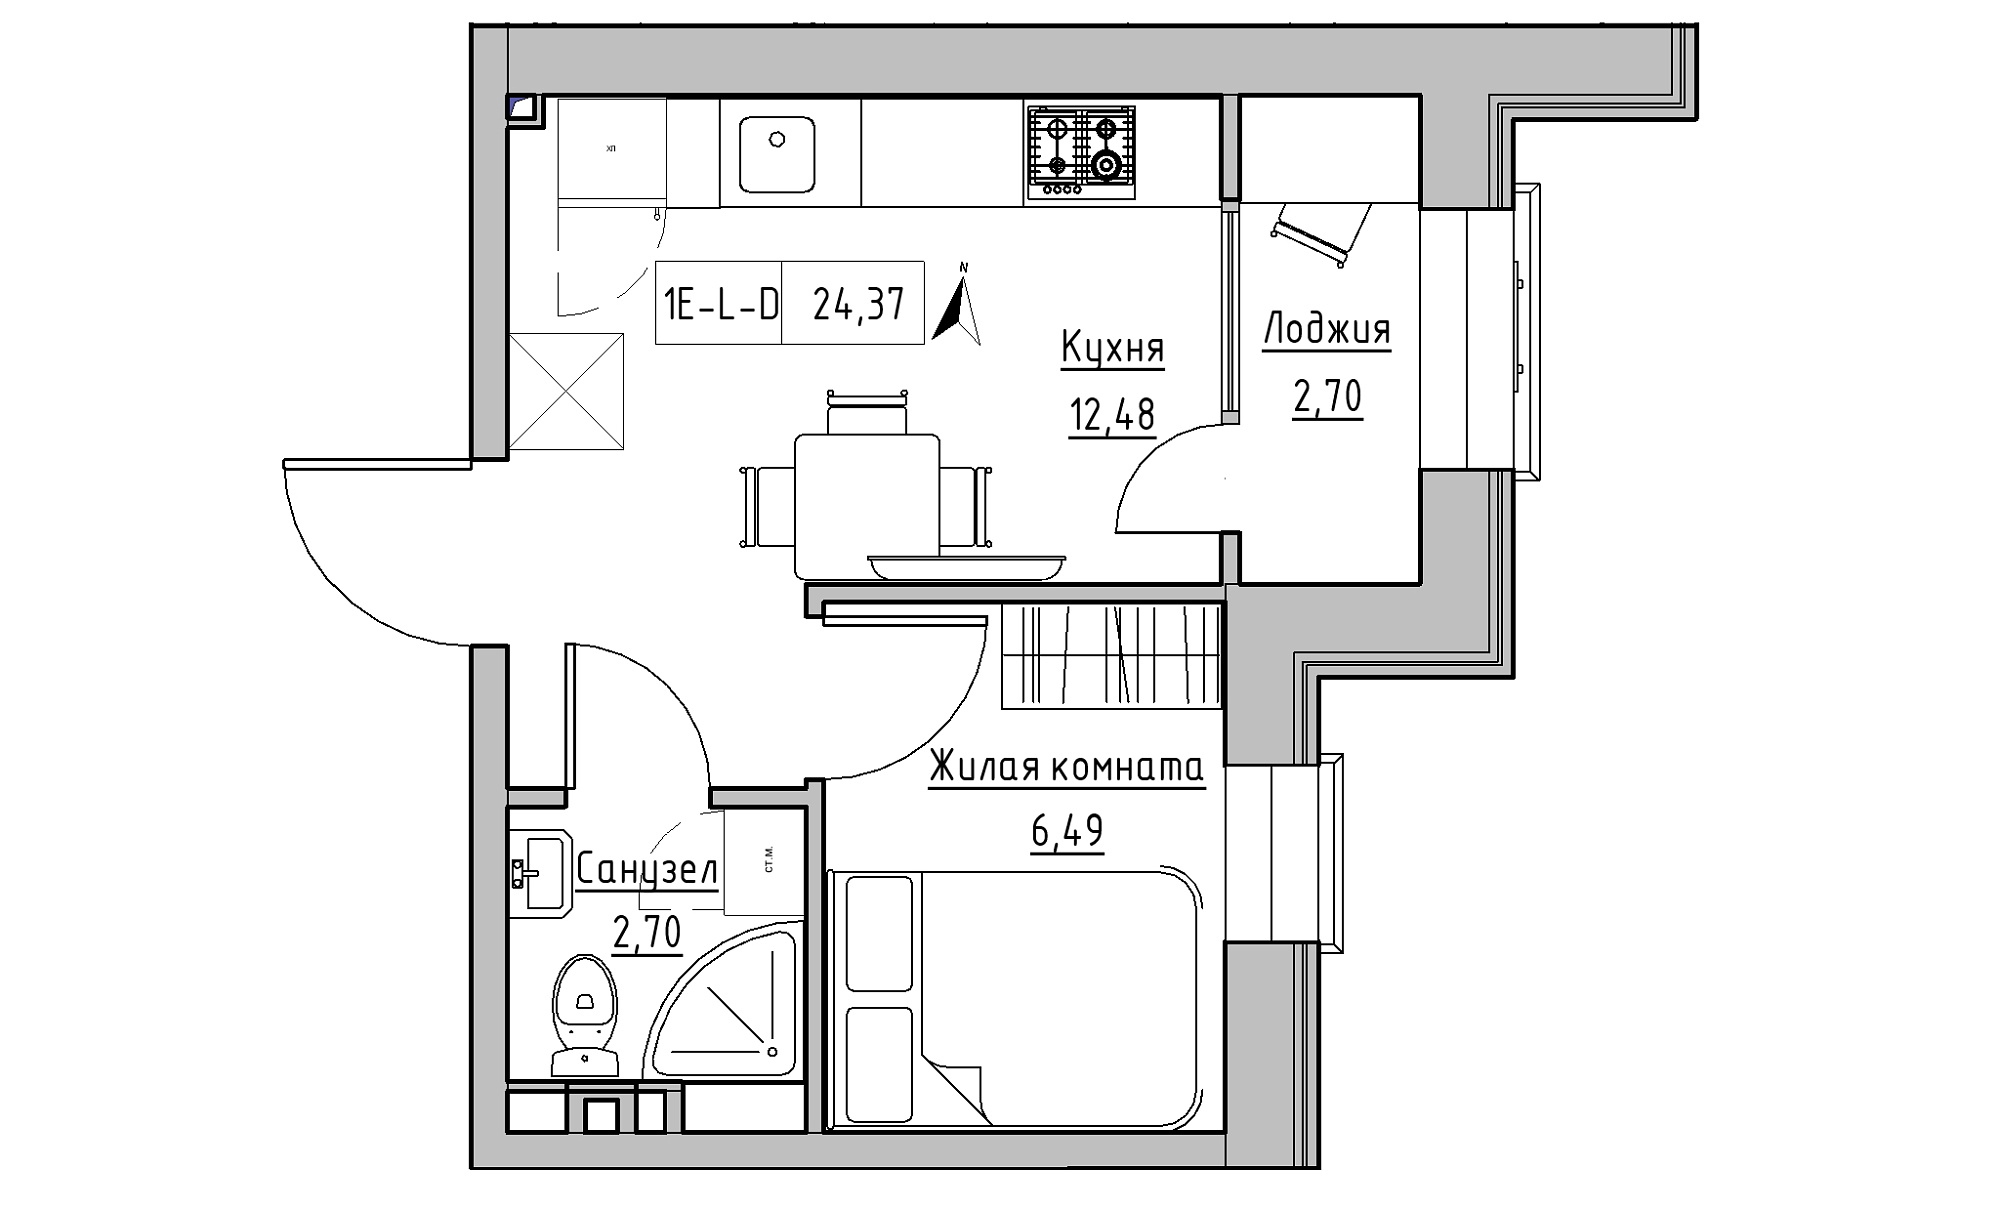 Планування 1-к квартира площею 24.37м2, KS-016-05/0018.